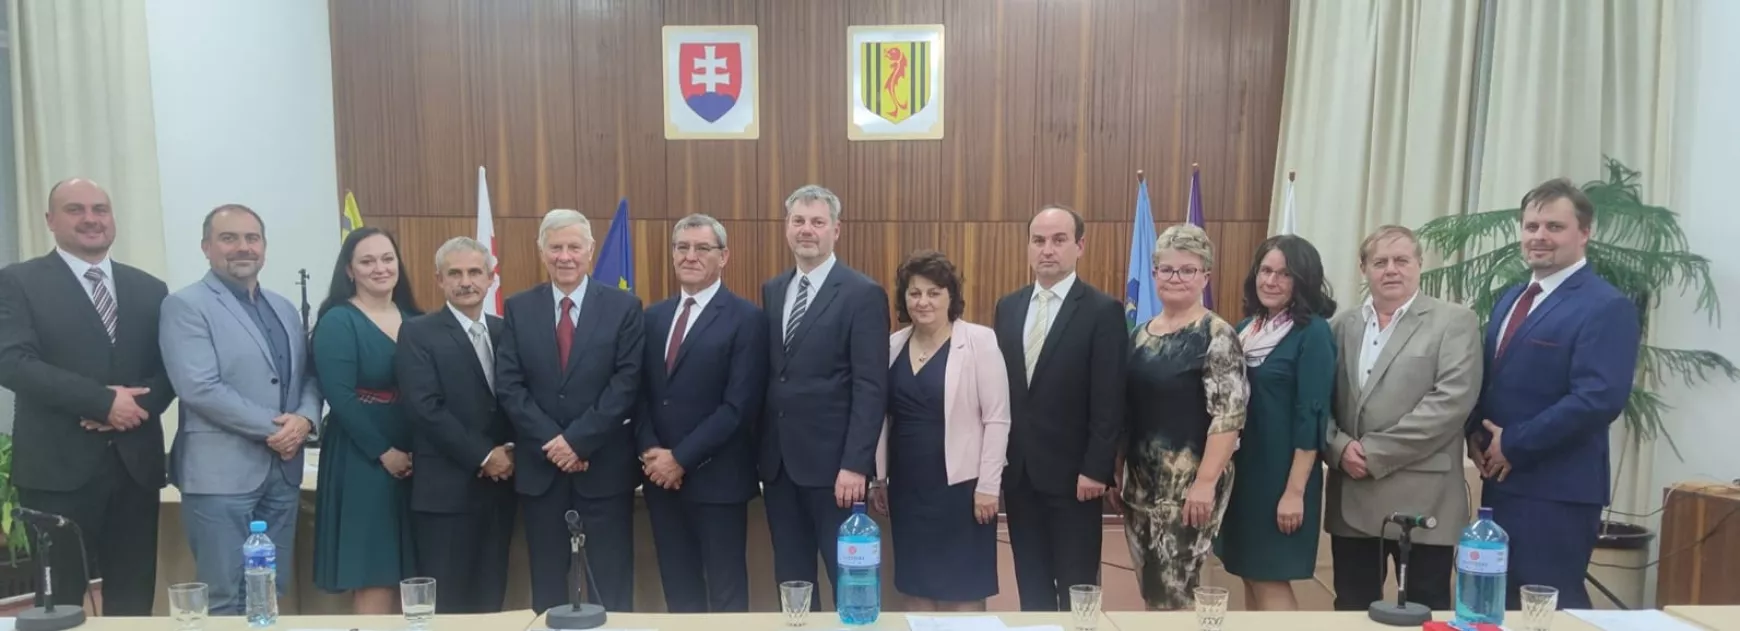 A bírósági beadvány ellenére megalakult a városi önkormányzat Naszvadon